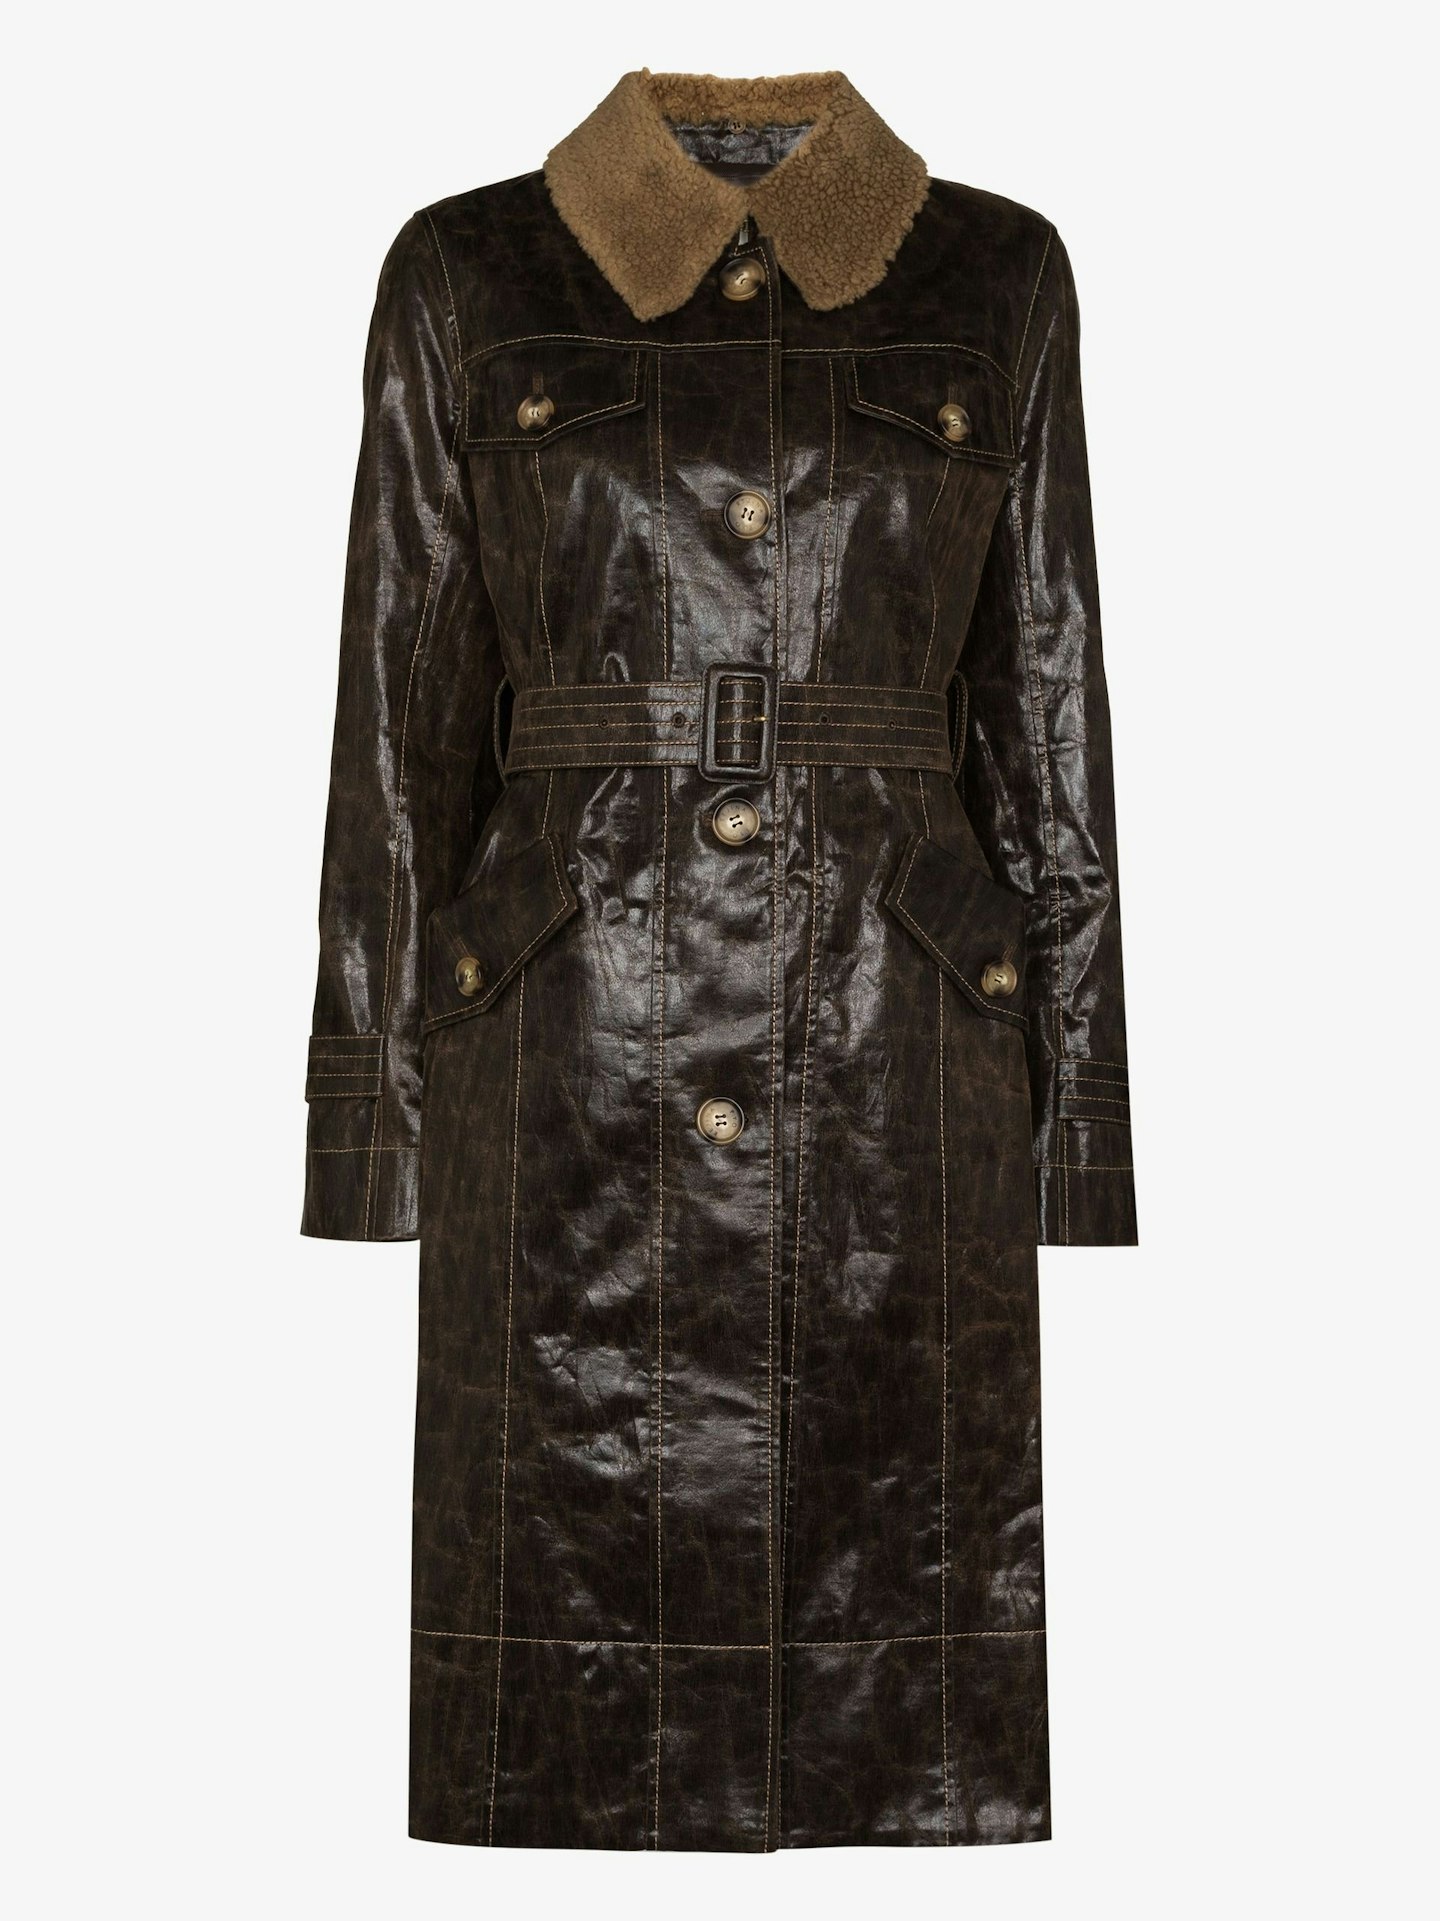 Rejina Pyo, Hana Faux-Leather Coat, £795